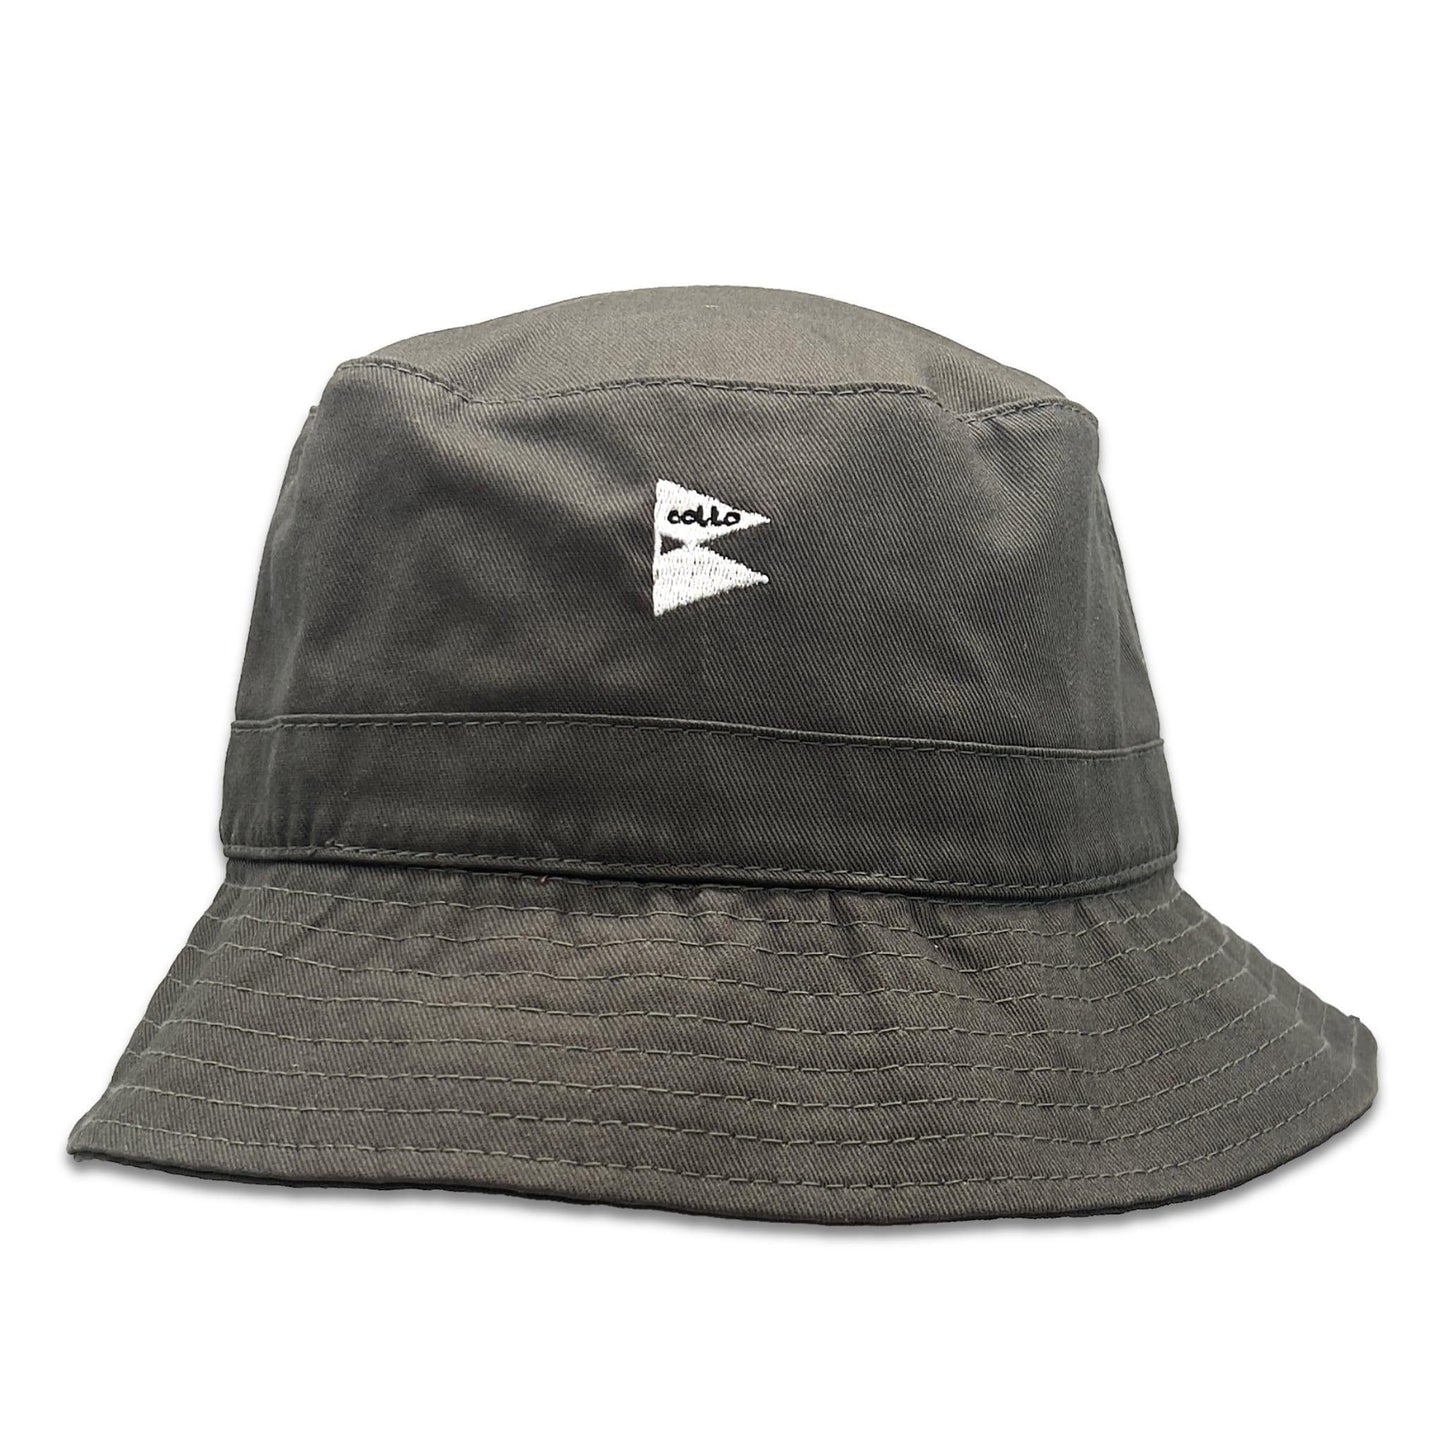 
                  
                    coLLo AppareL Bucket Hat S-M / OLIVE CORWIN
                  
                